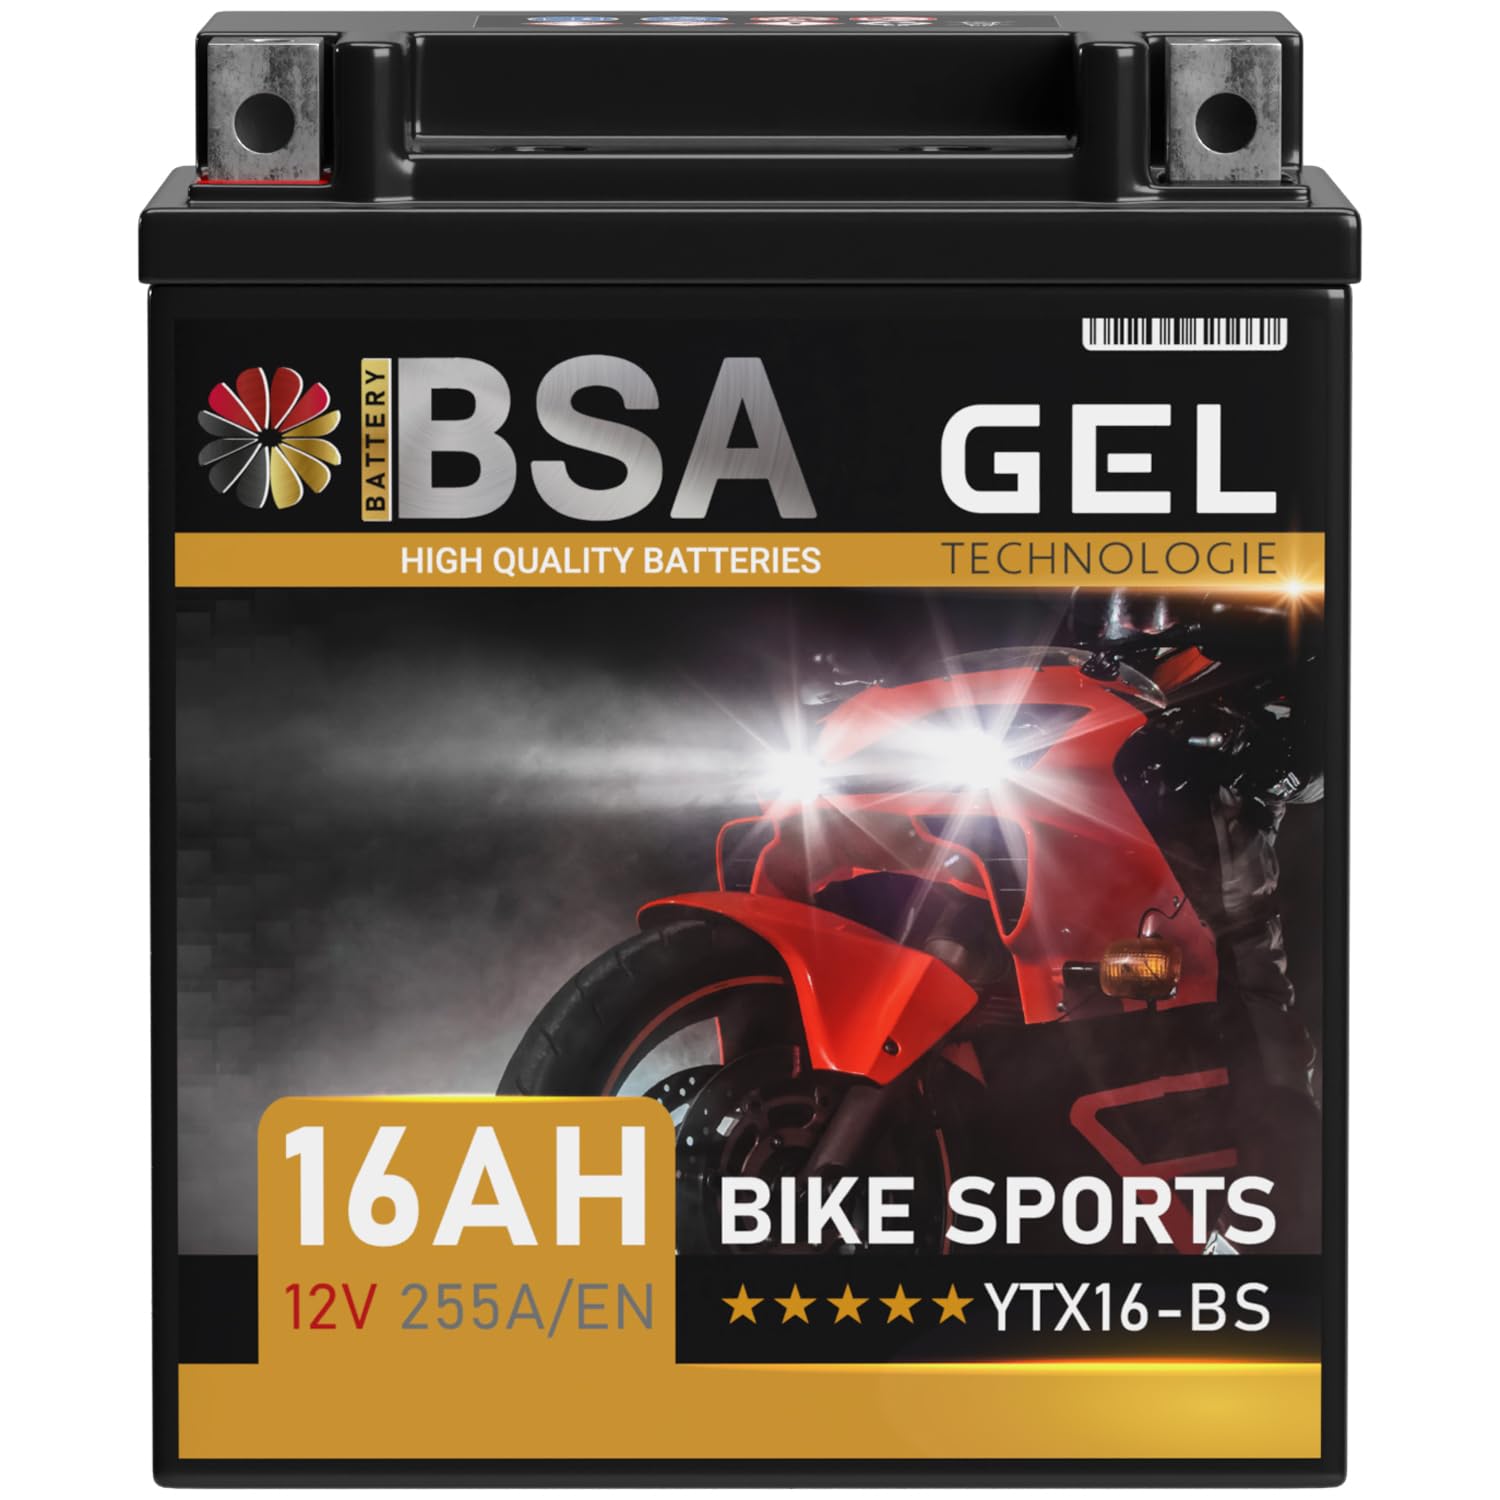 BSA YTX16-BS GEL Roller Batterie 12V 16Ah 255A/EN Motorradbatterie doppelte Lebensdauer entspricht 51422 YTX16-4 YTX16BS ETX16-BS vorgeladen auslaufsicher wartungsfrei ersetzt 14Ah von BSA BATTERY HIGH QUALITY BATTERIES